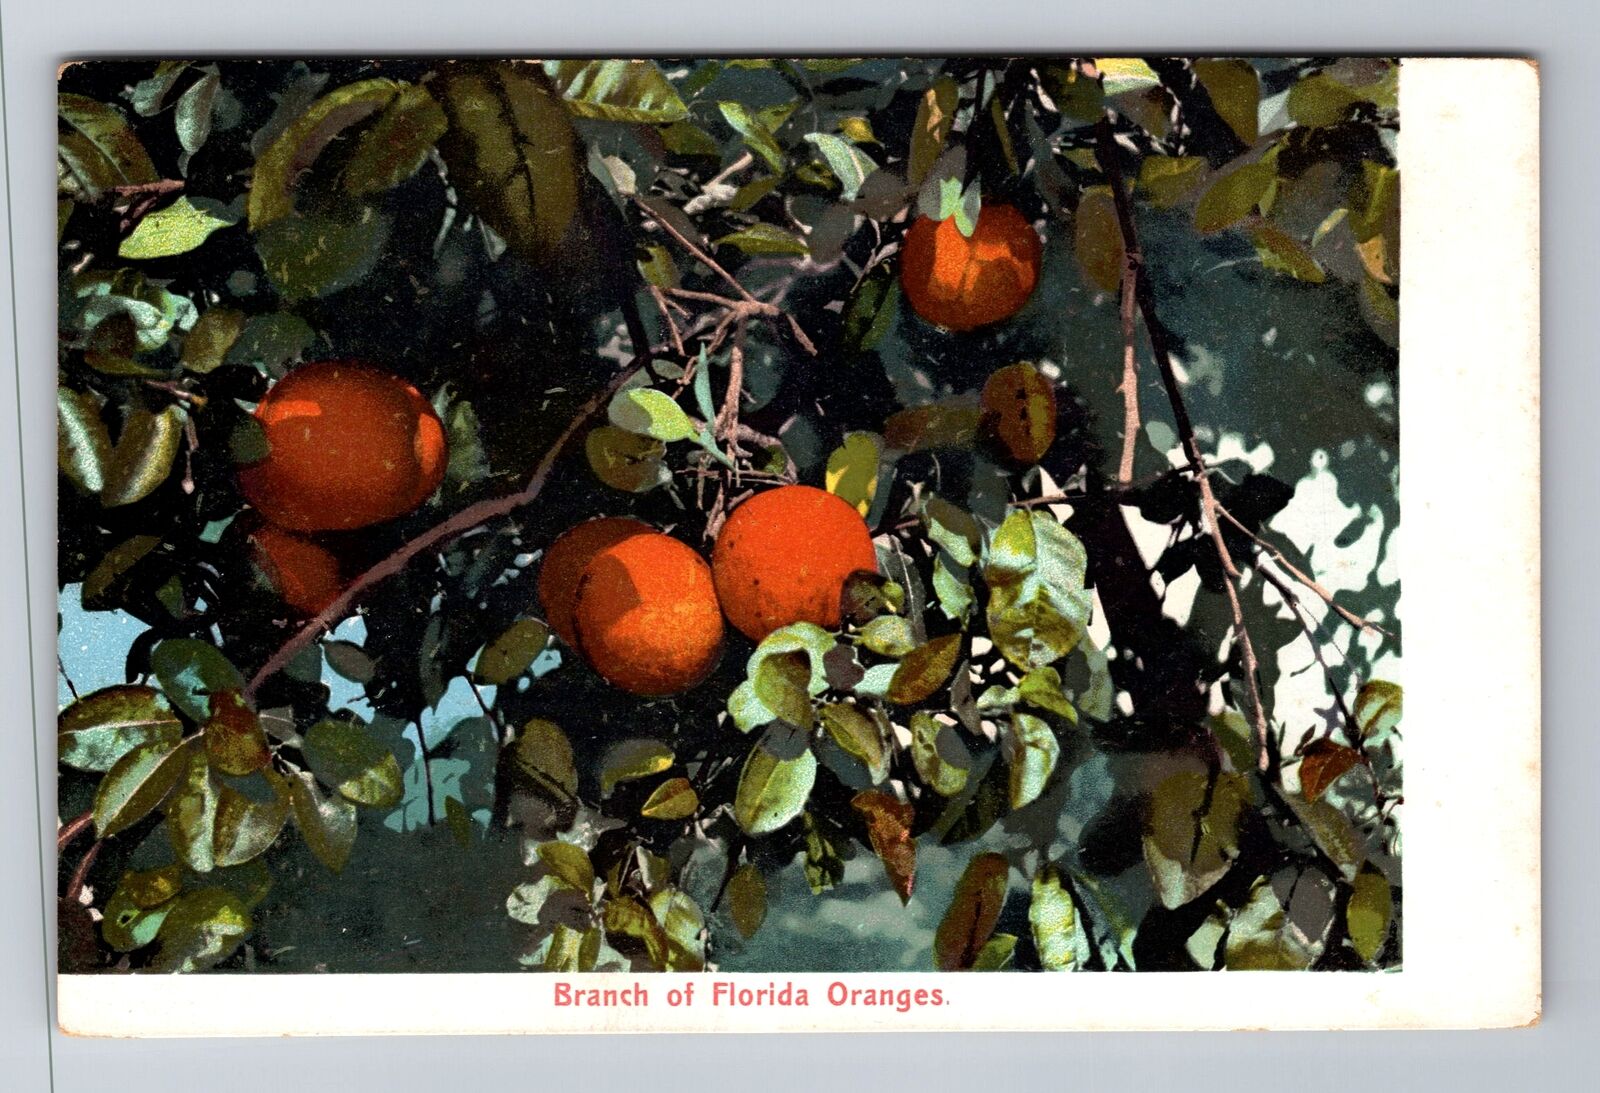 FL-Florida, General Greeting, Branch of Florida Oranges Antique Vintage Postcard